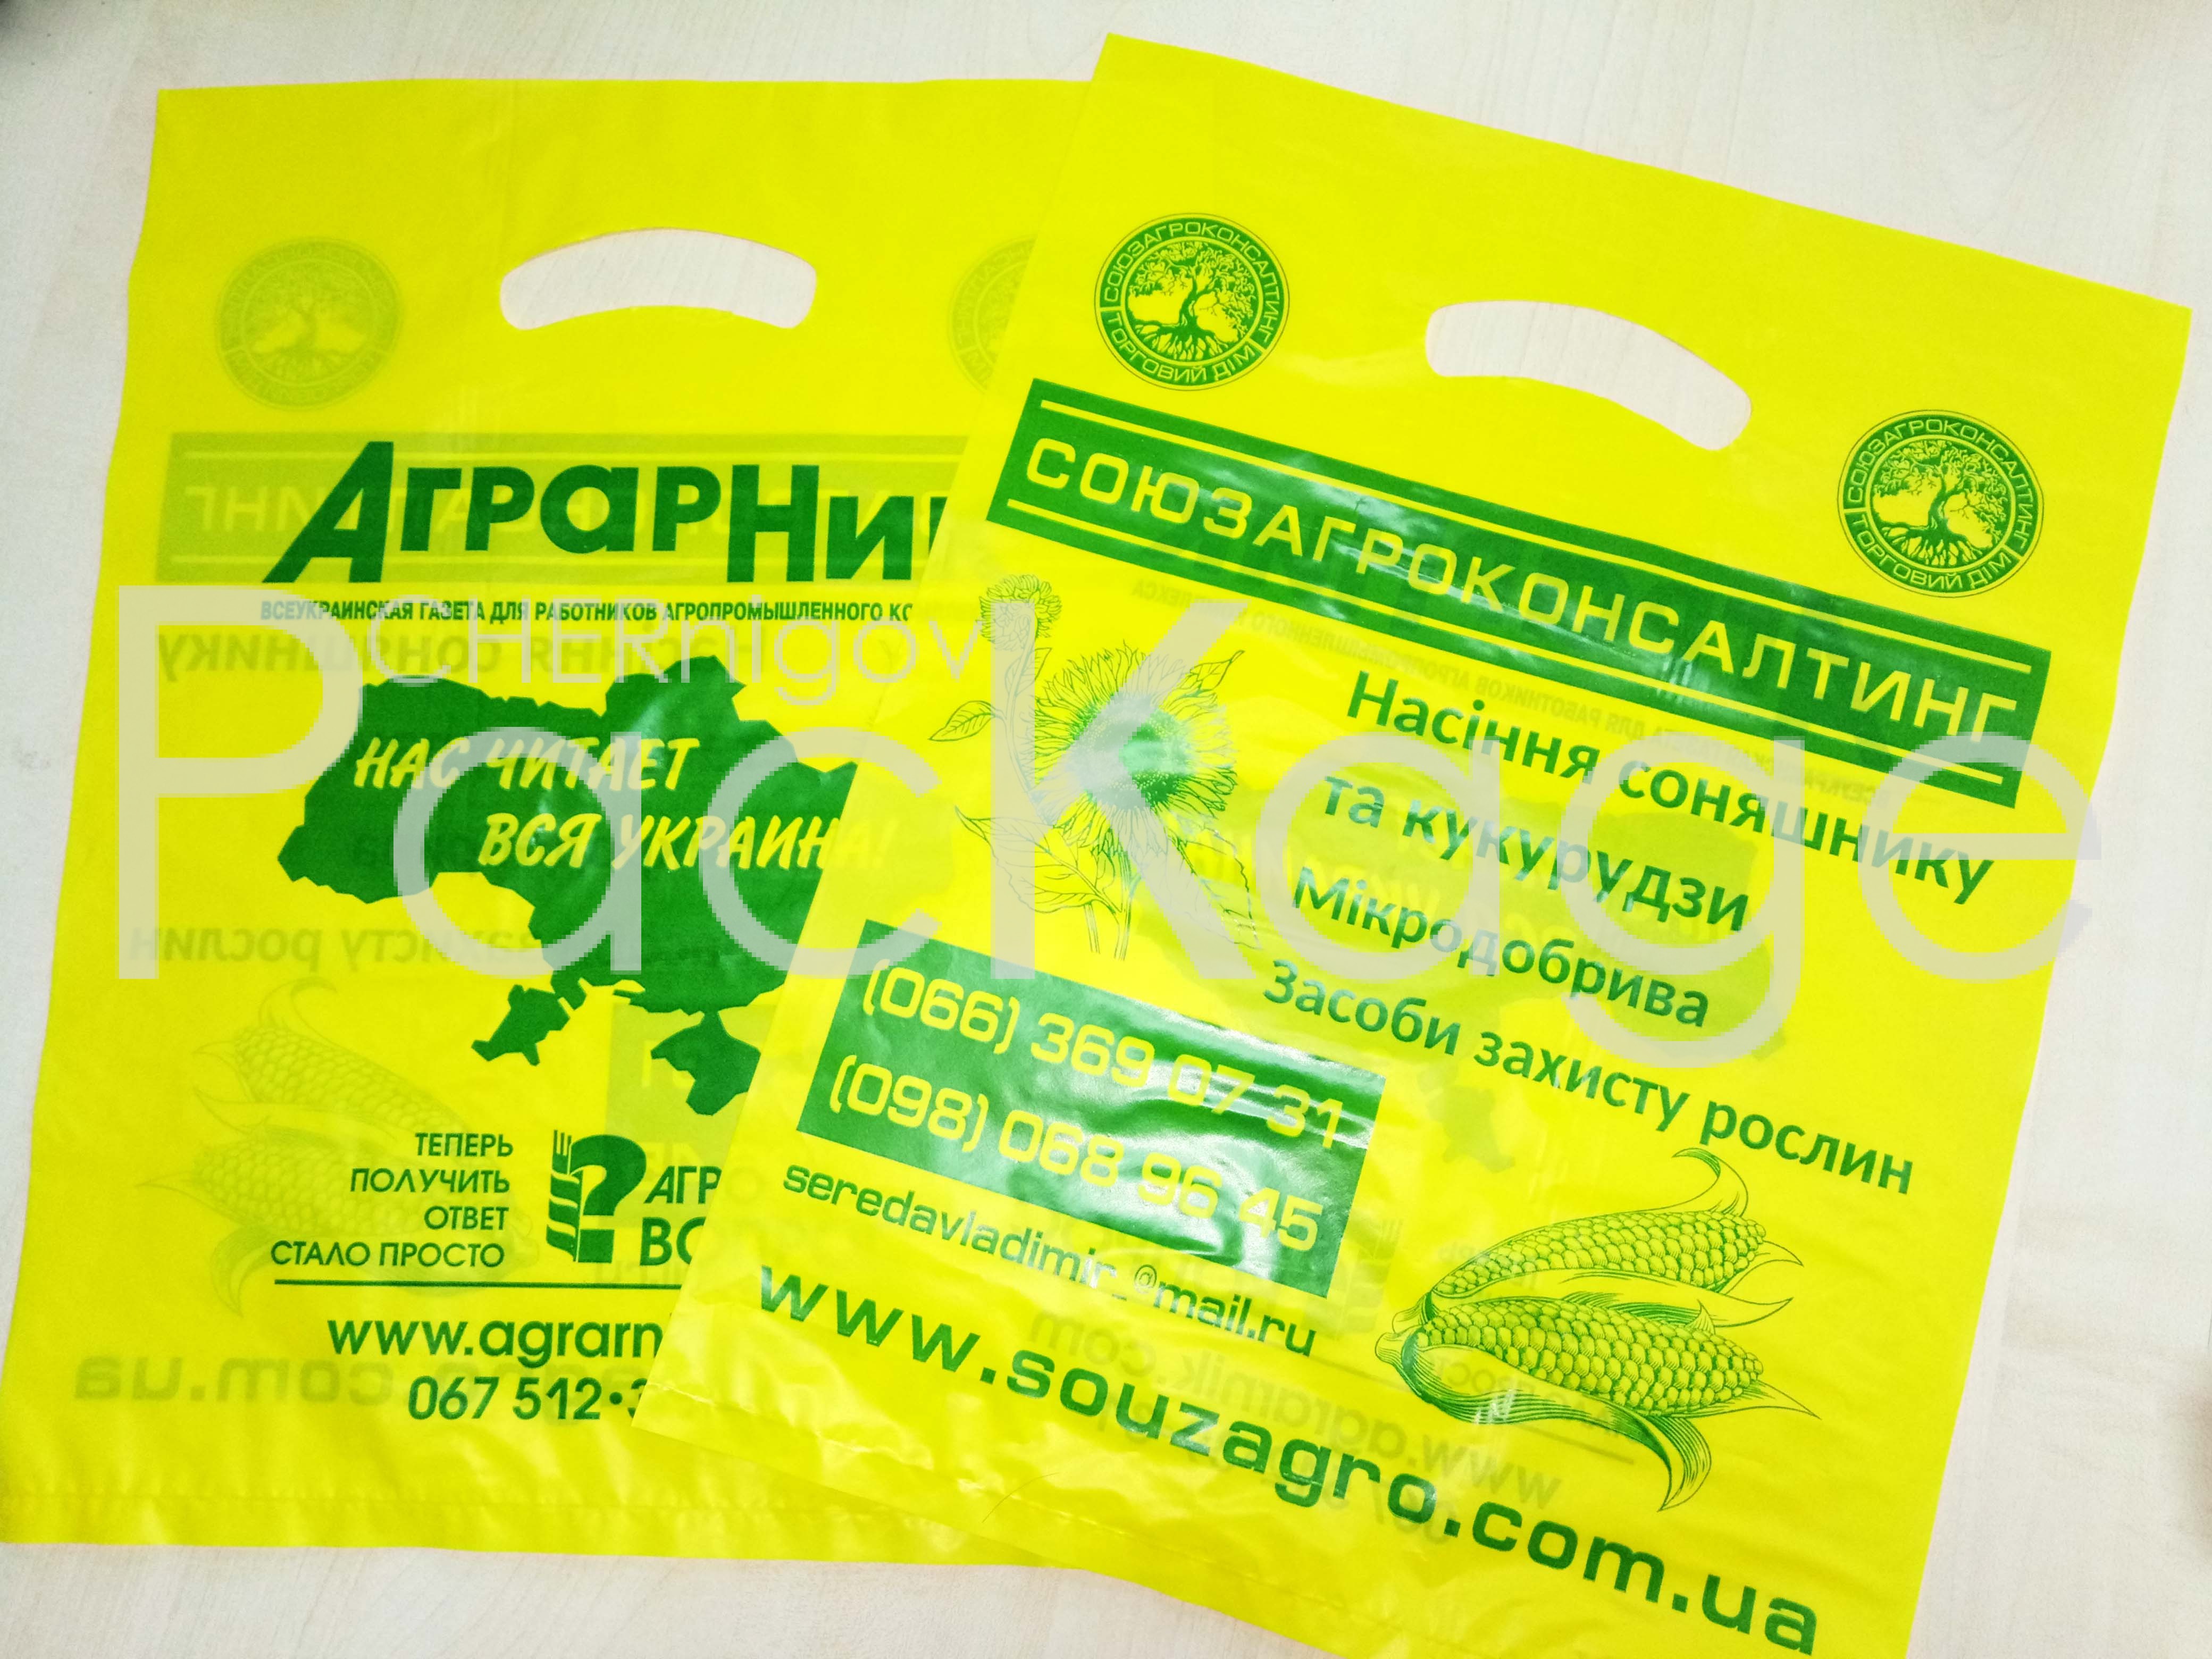 Пакеты для фермерских и агропромышленных хозяйств Chernigov Package - Фото P70310-105113